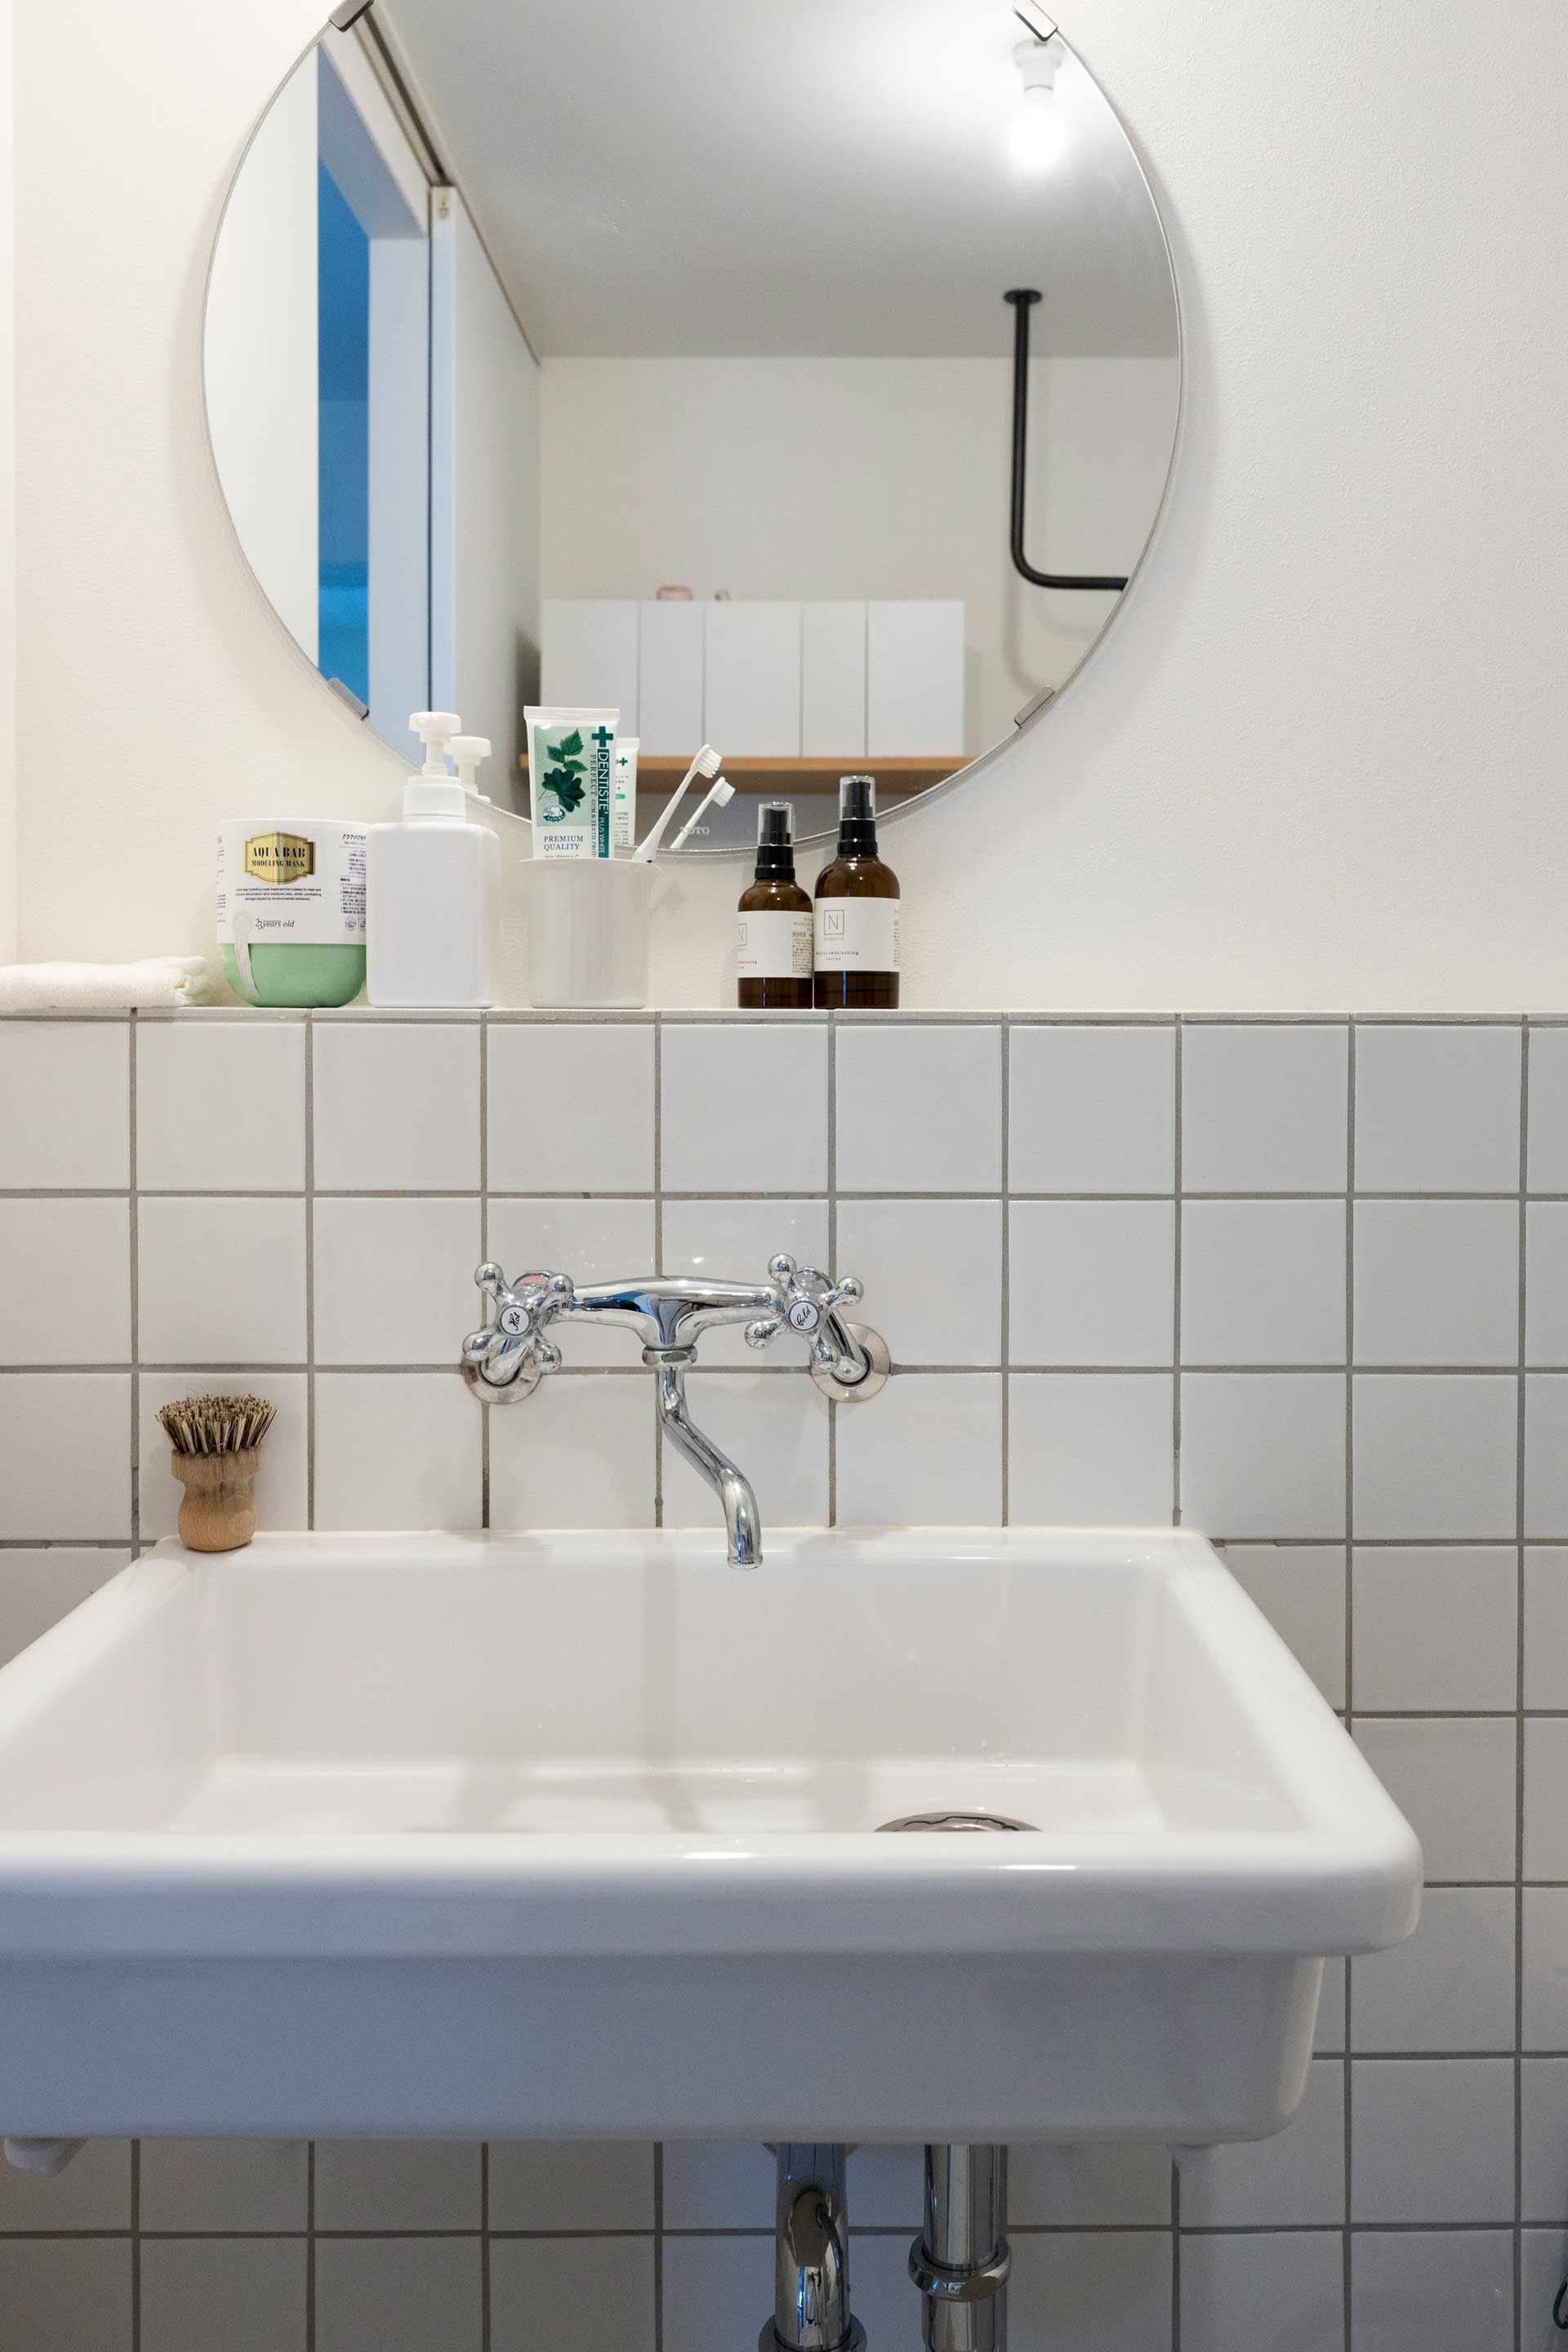 トイレとサニタリーは一体化させて、清潔感のある白いタイル貼りに。シンクは使いやすい実験用を採用。